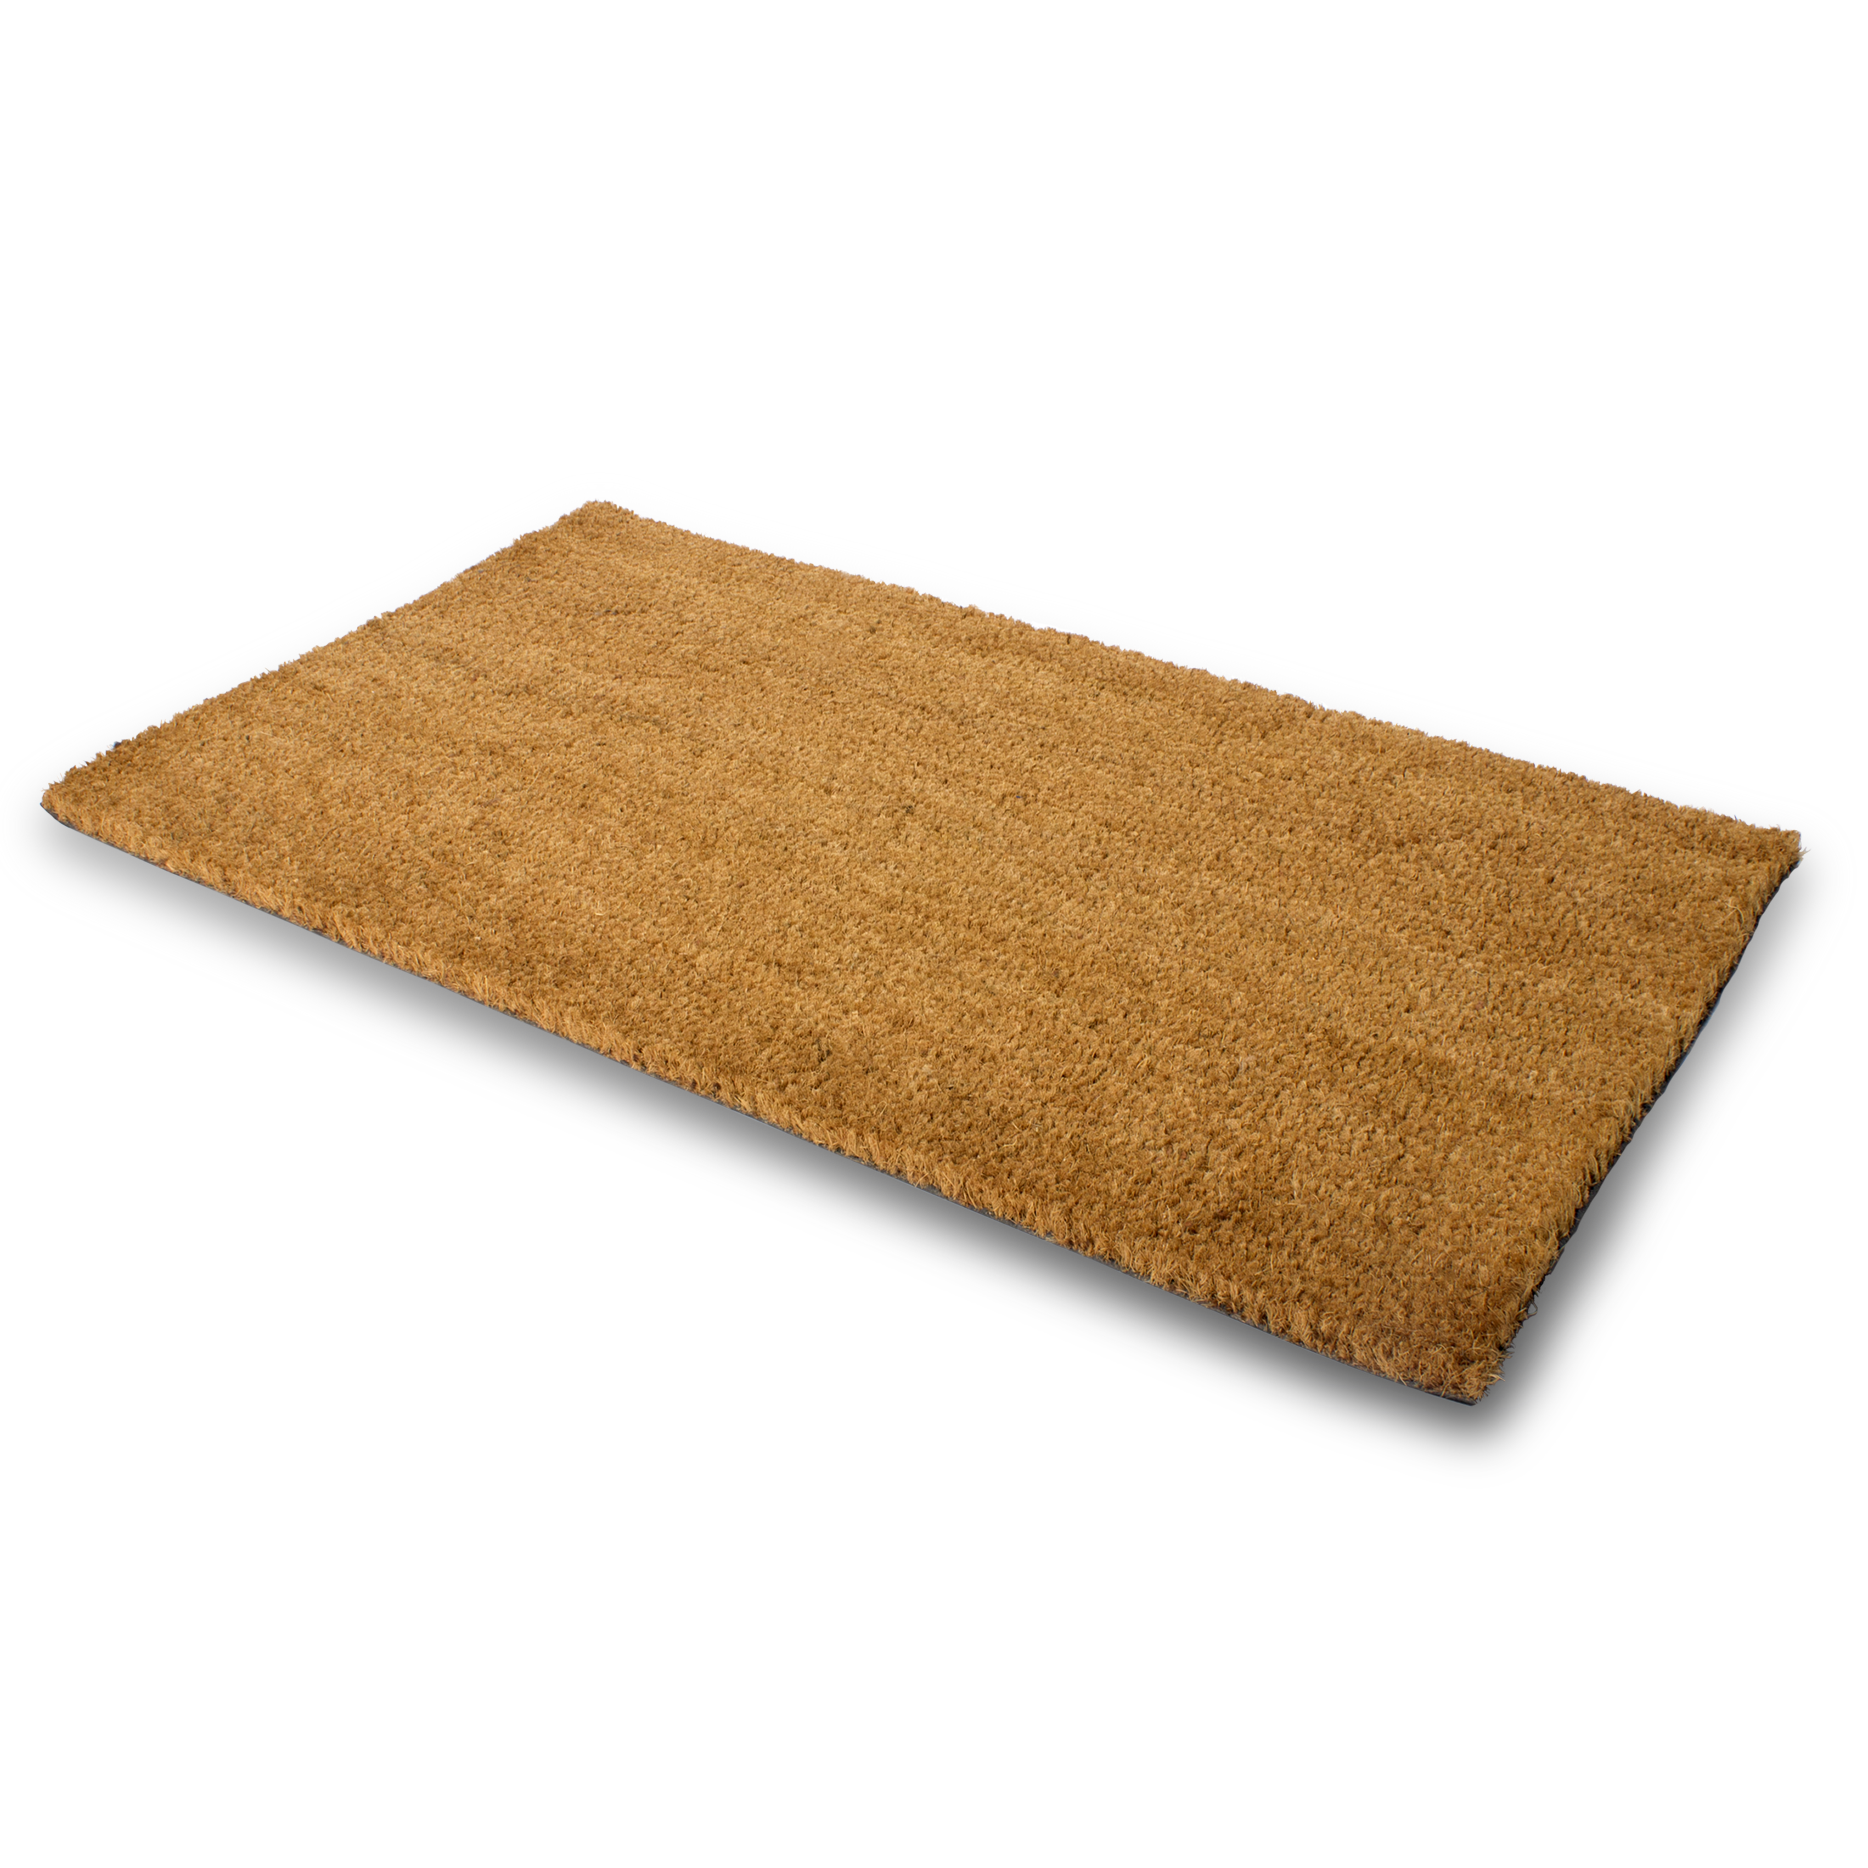 Patio Doormat - 25mm thick Coir